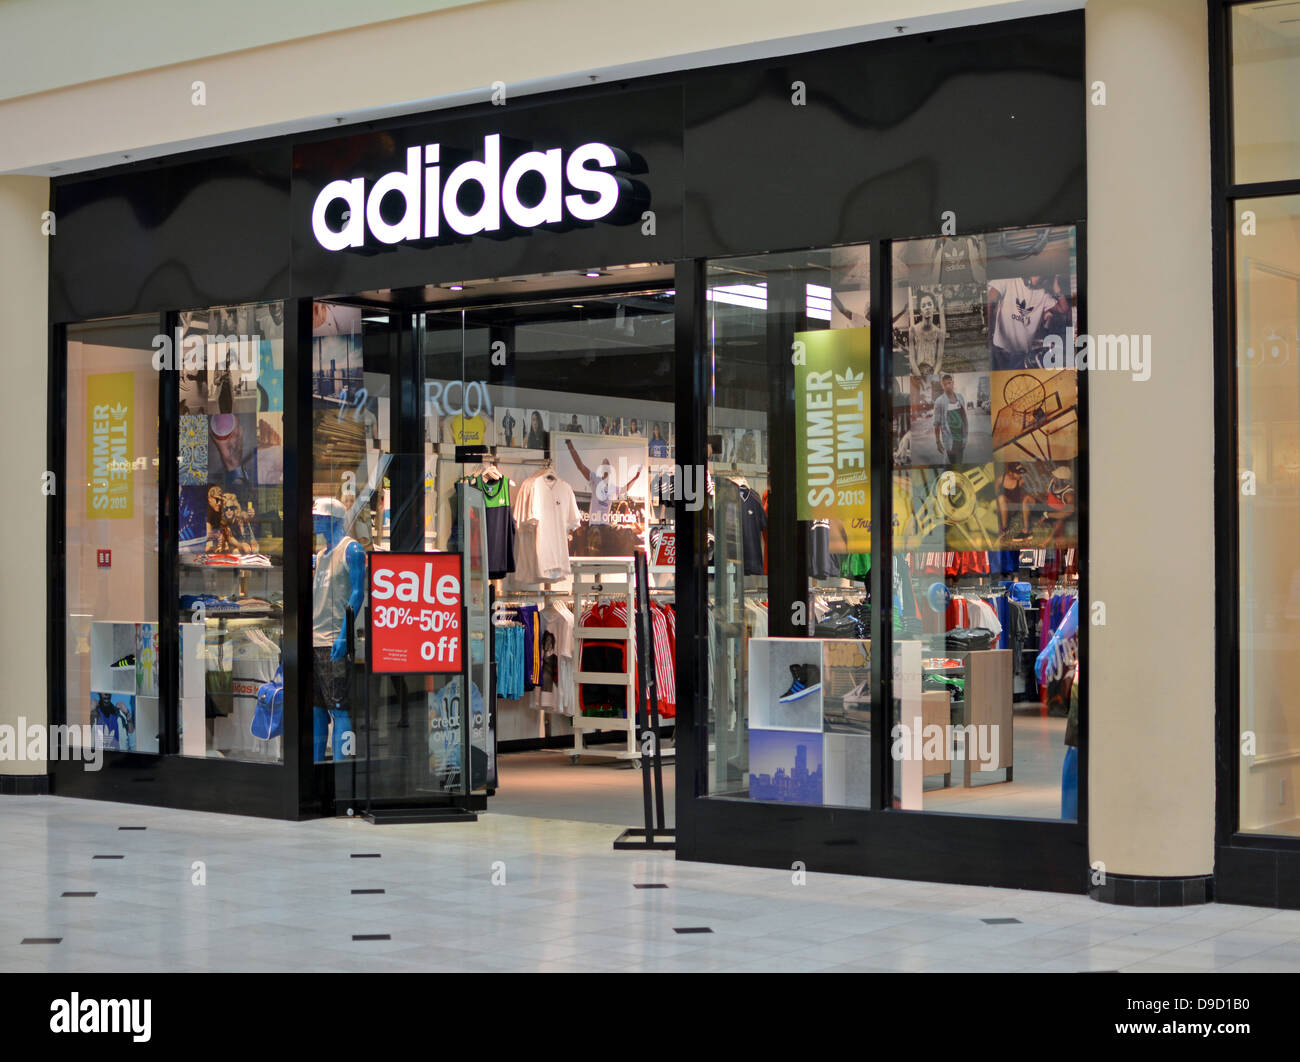 Adidas Store Display Stockfotos und 